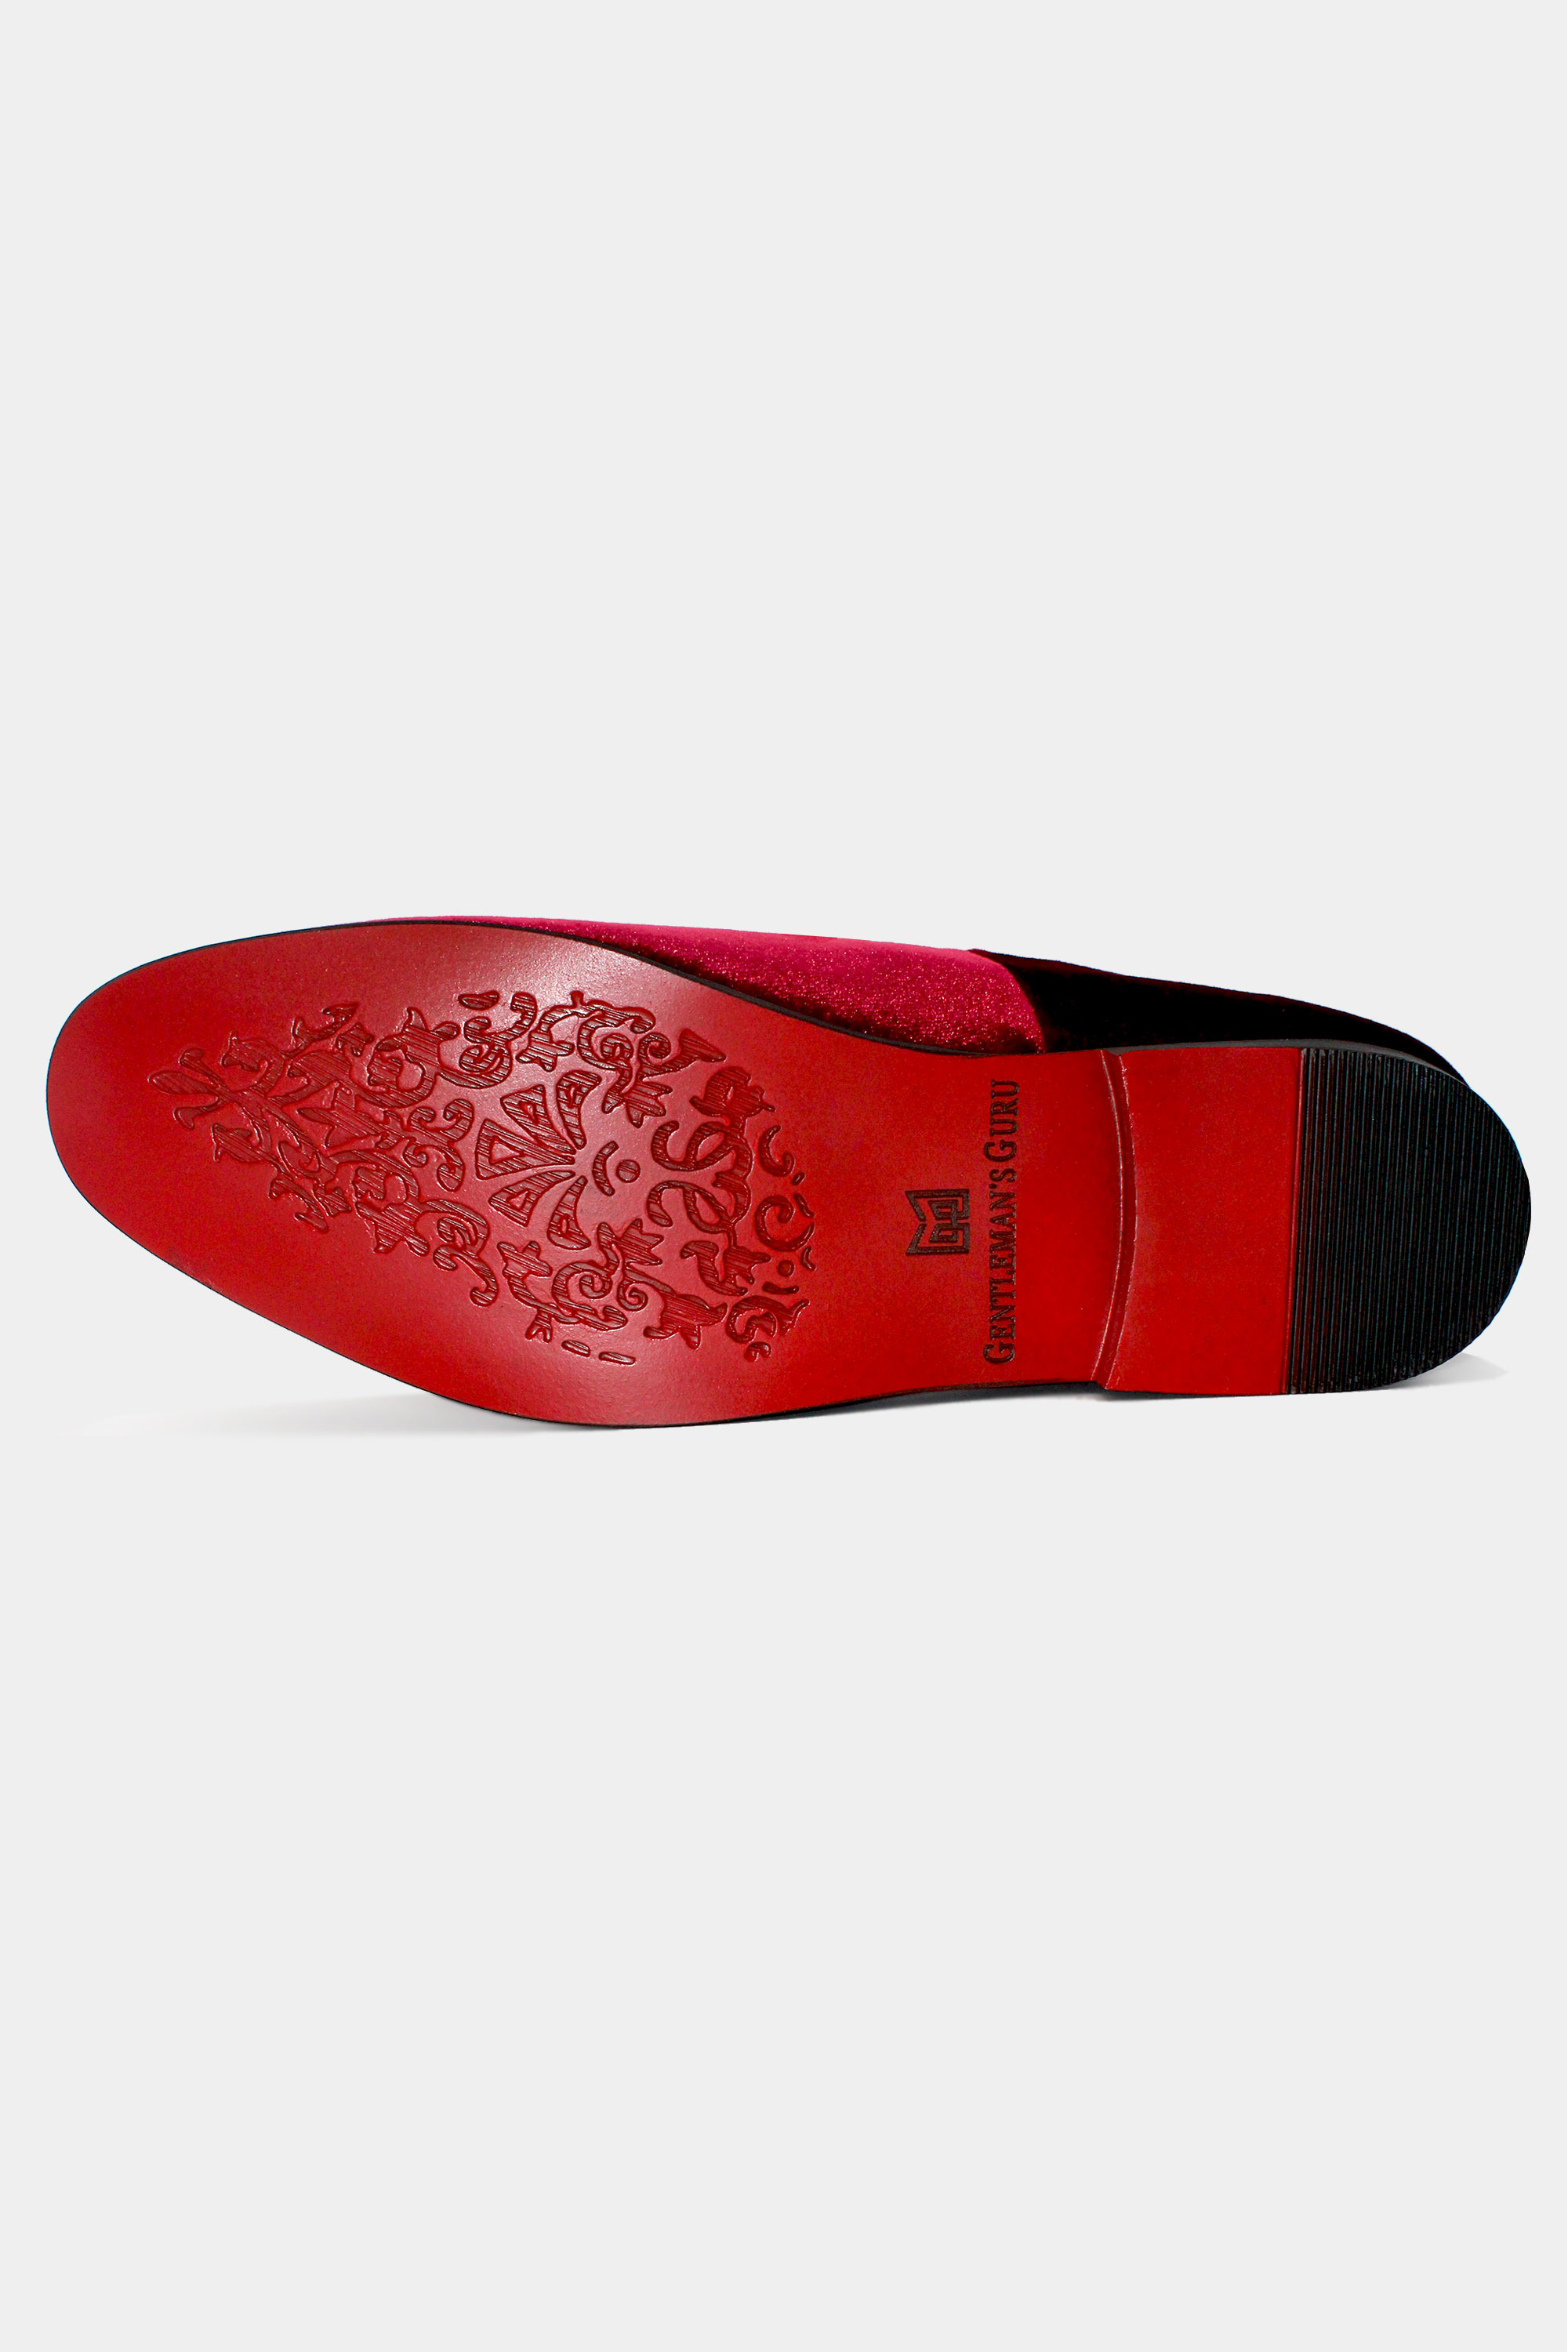 Mens Velvet Red Bottom Slip On Shoes - Black / Velvet / 11